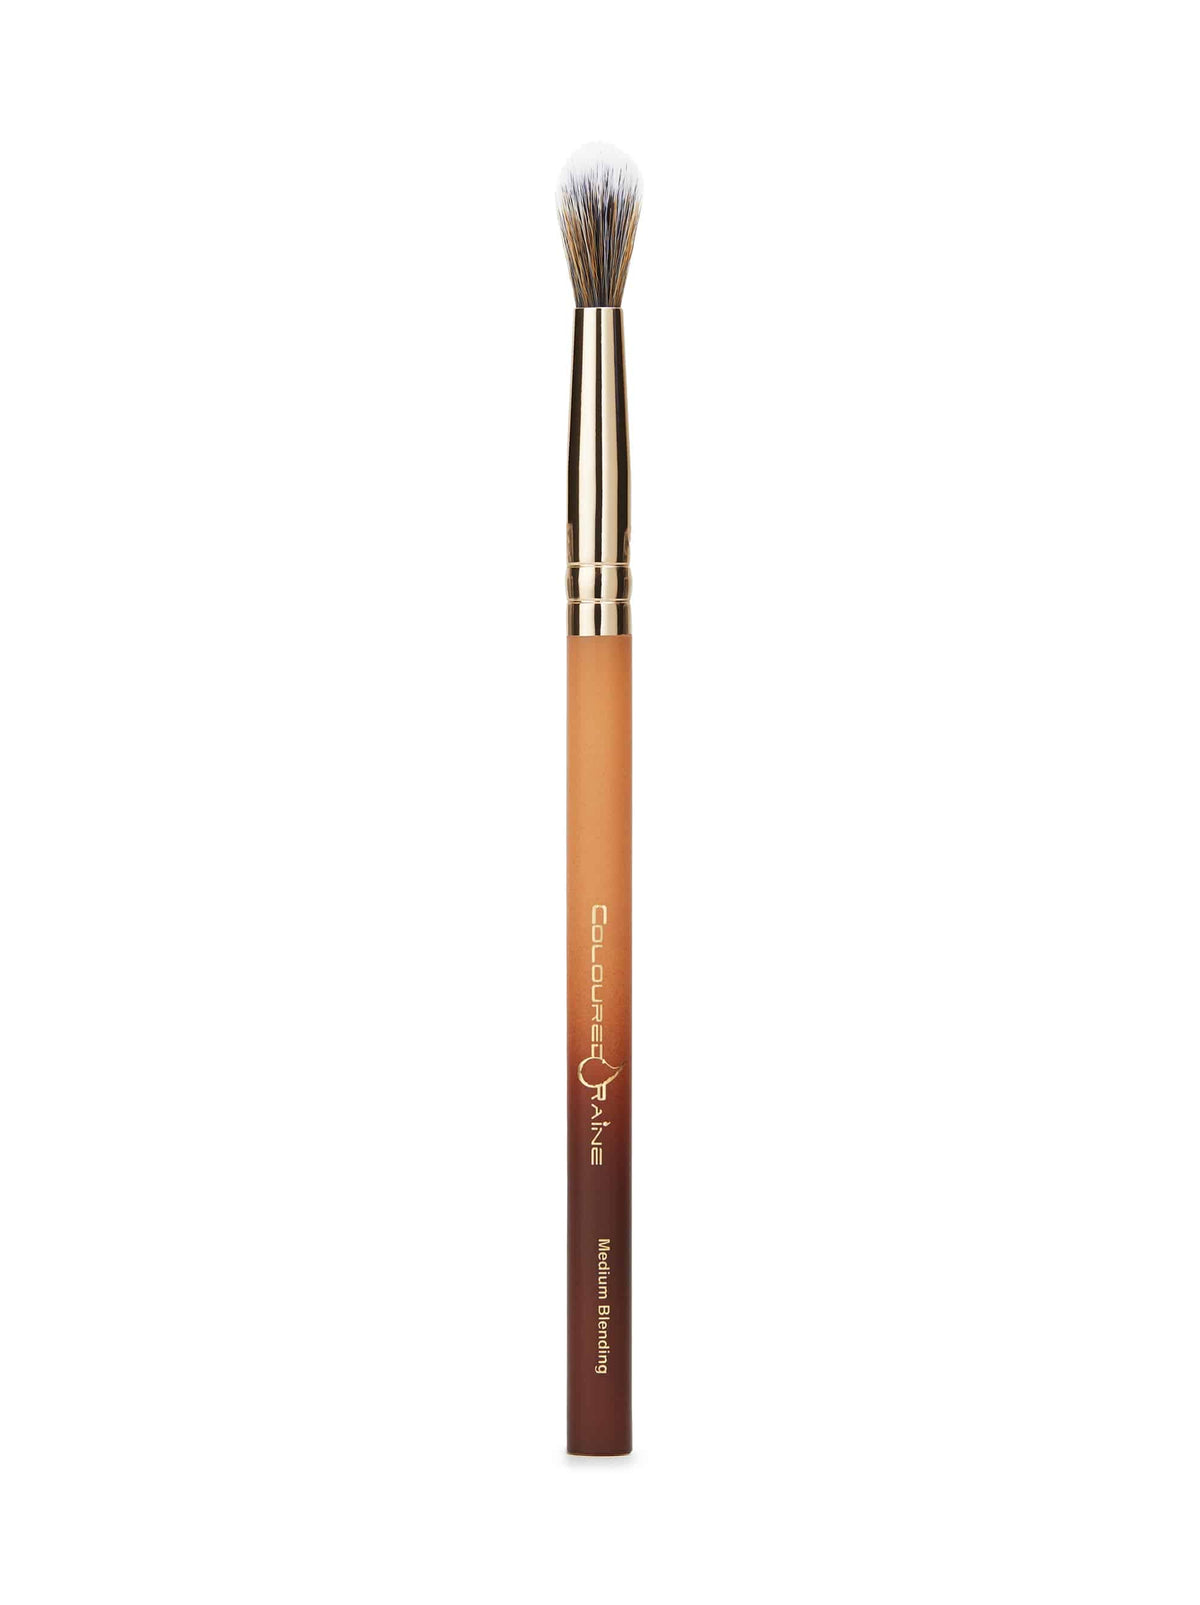 Signature Medium Tapered Blending Brush - Coloured Raine Cosmetics